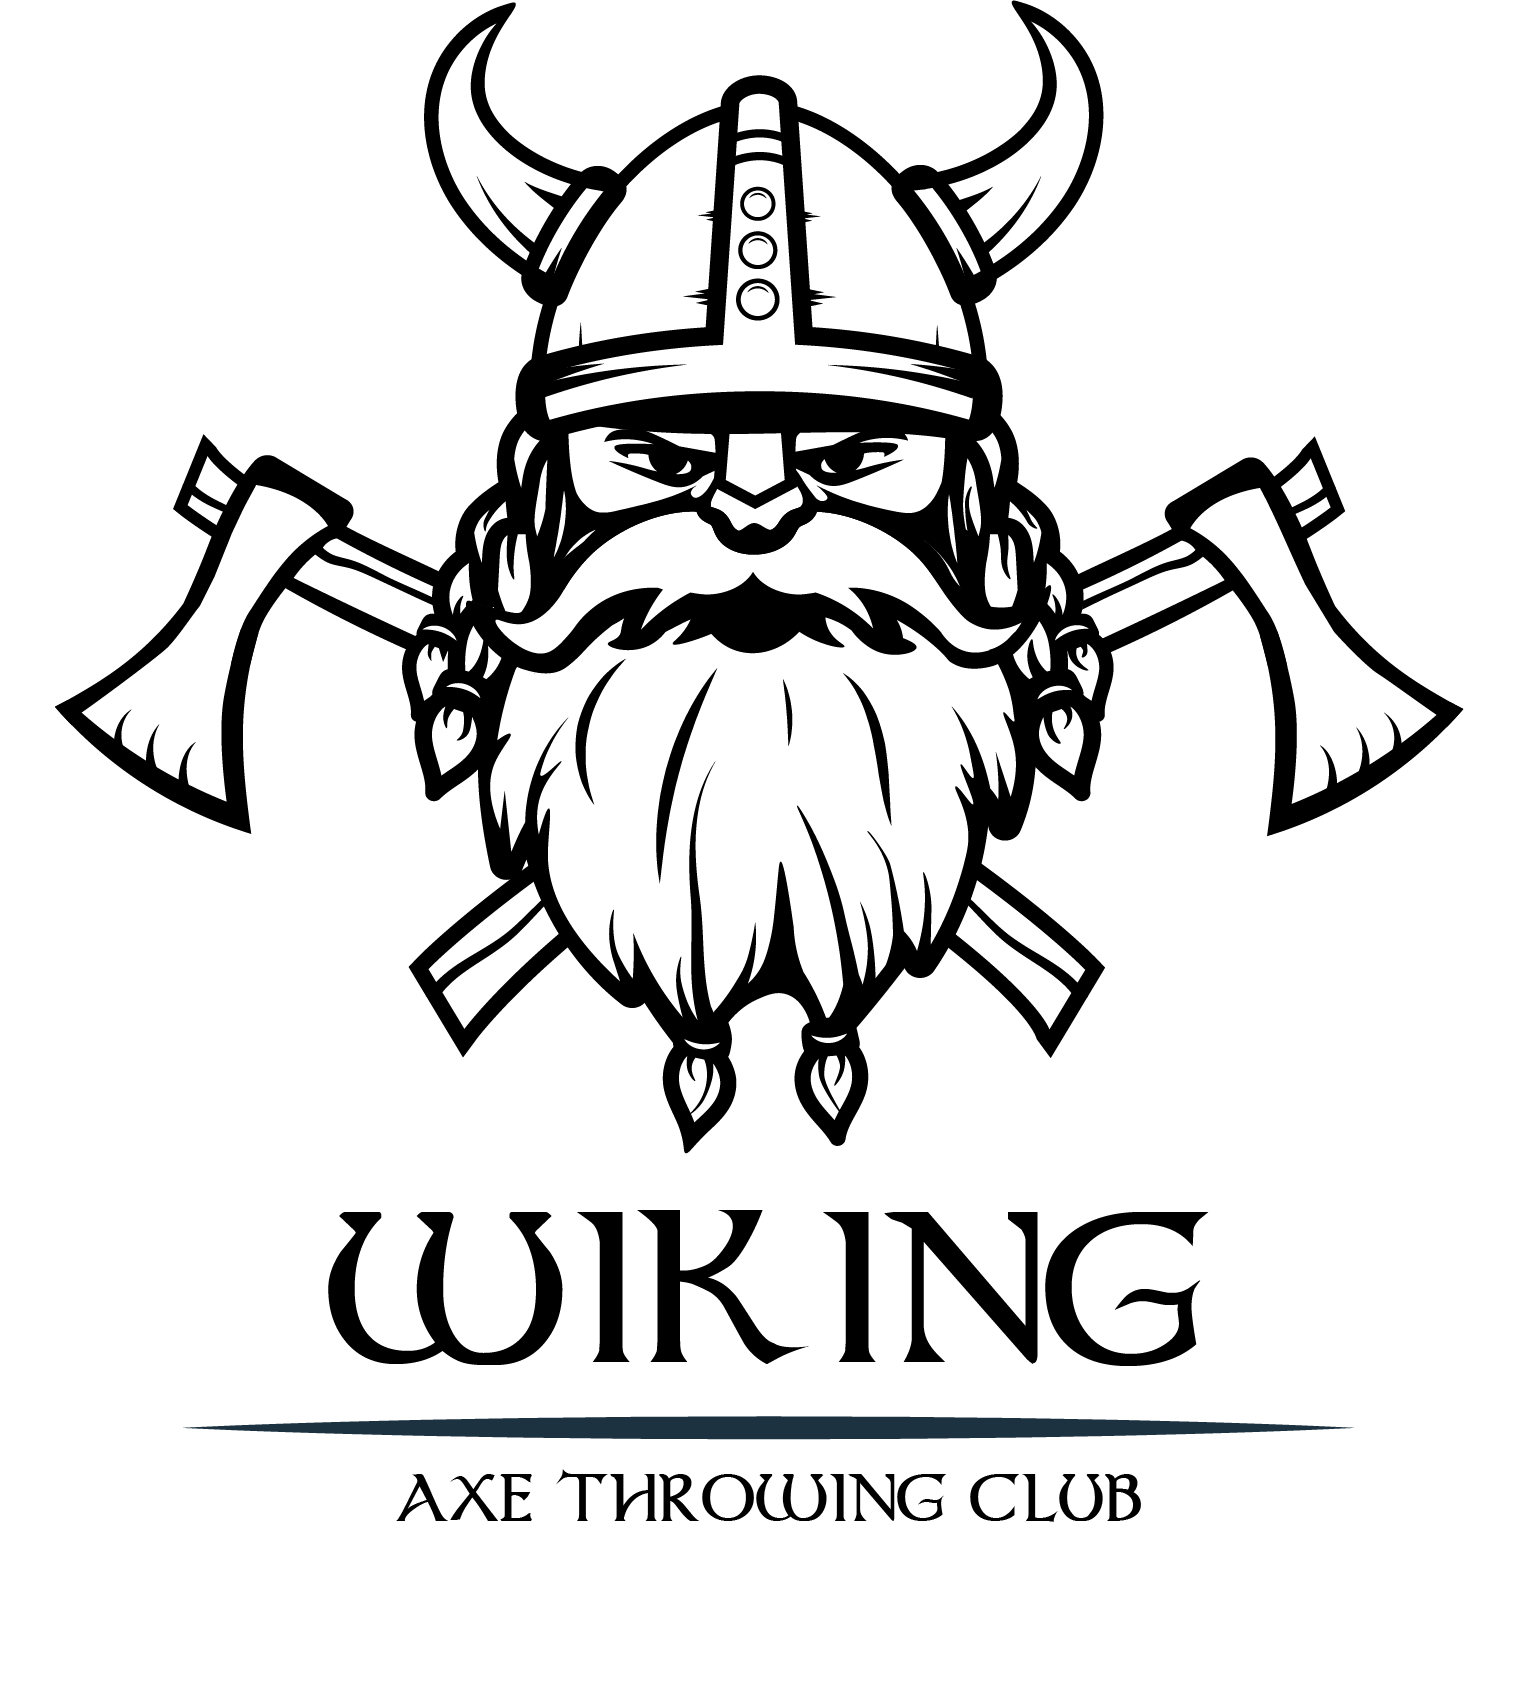 Czarno-białe logo. Głowa wikinga w chełmie z rogami. A pod jego głową skrzyżowane dwa topory